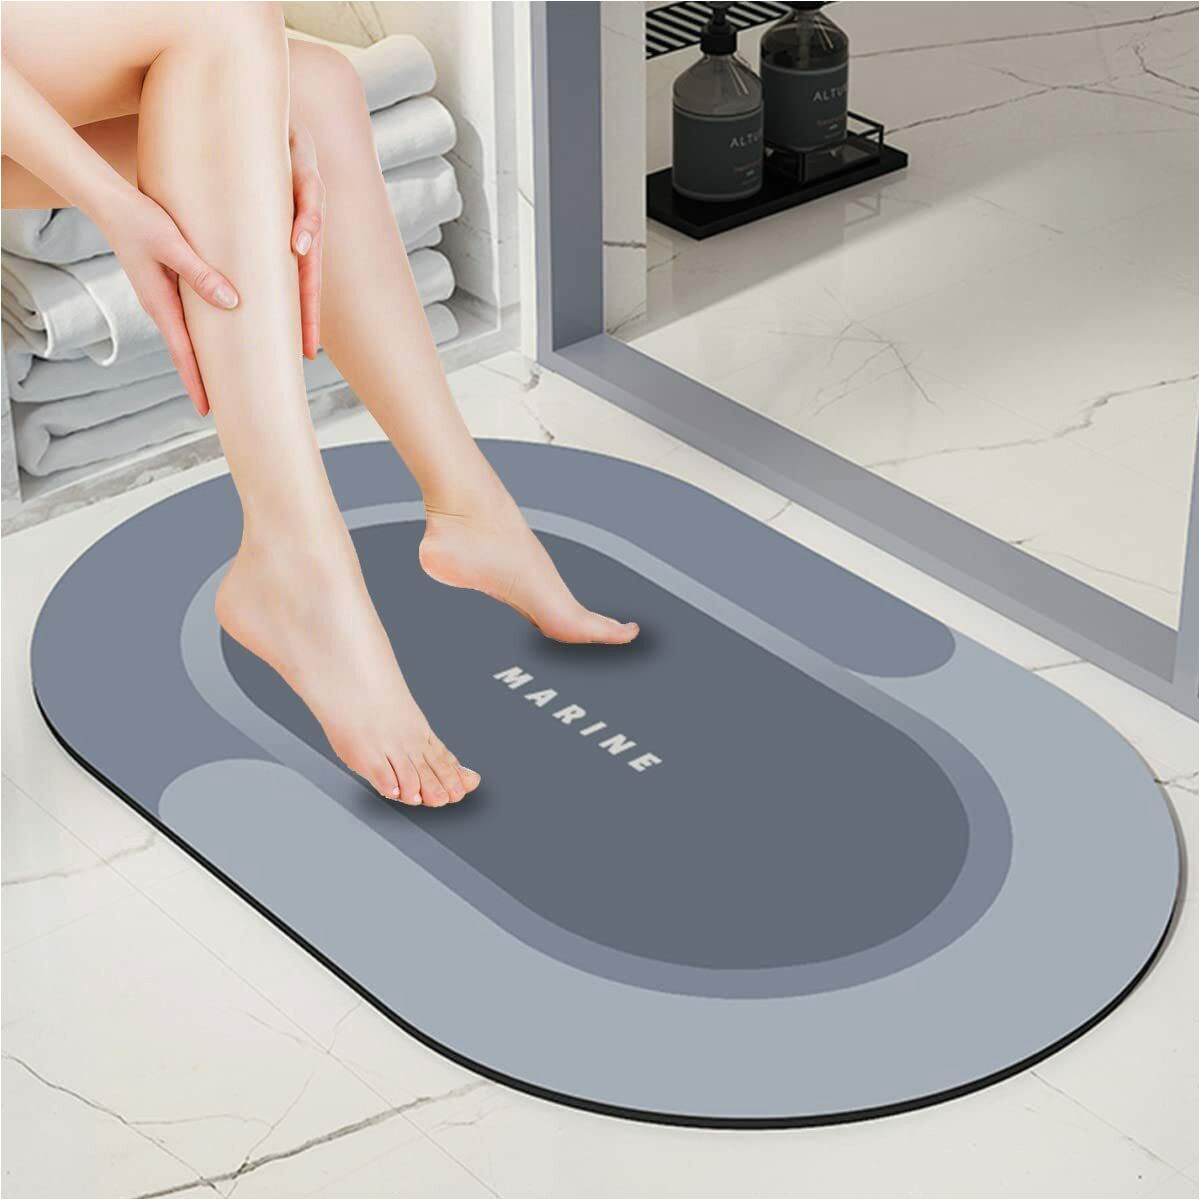 Super Absorbent Bath Rug Super Absorbent Bathroom Mat, Non Slip soft Wrinkle Free Bathroom …